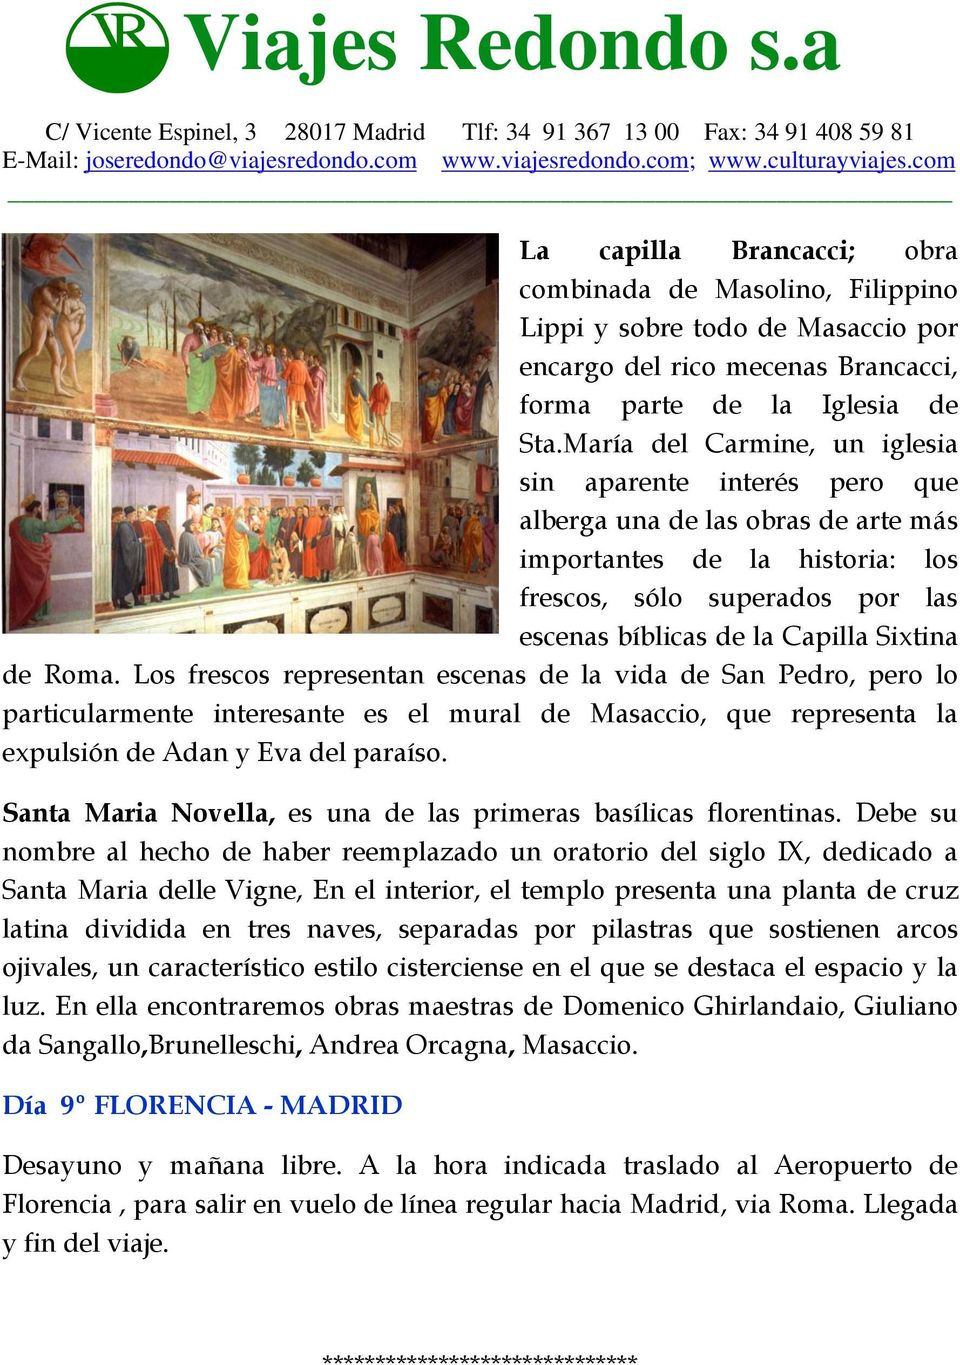 de Roma. Los frescos representan escenas de la vida de San Pedro, pero lo particularmente interesante es el mural de Masaccio, que representa la expulsión de Adan y Eva del paraíso.